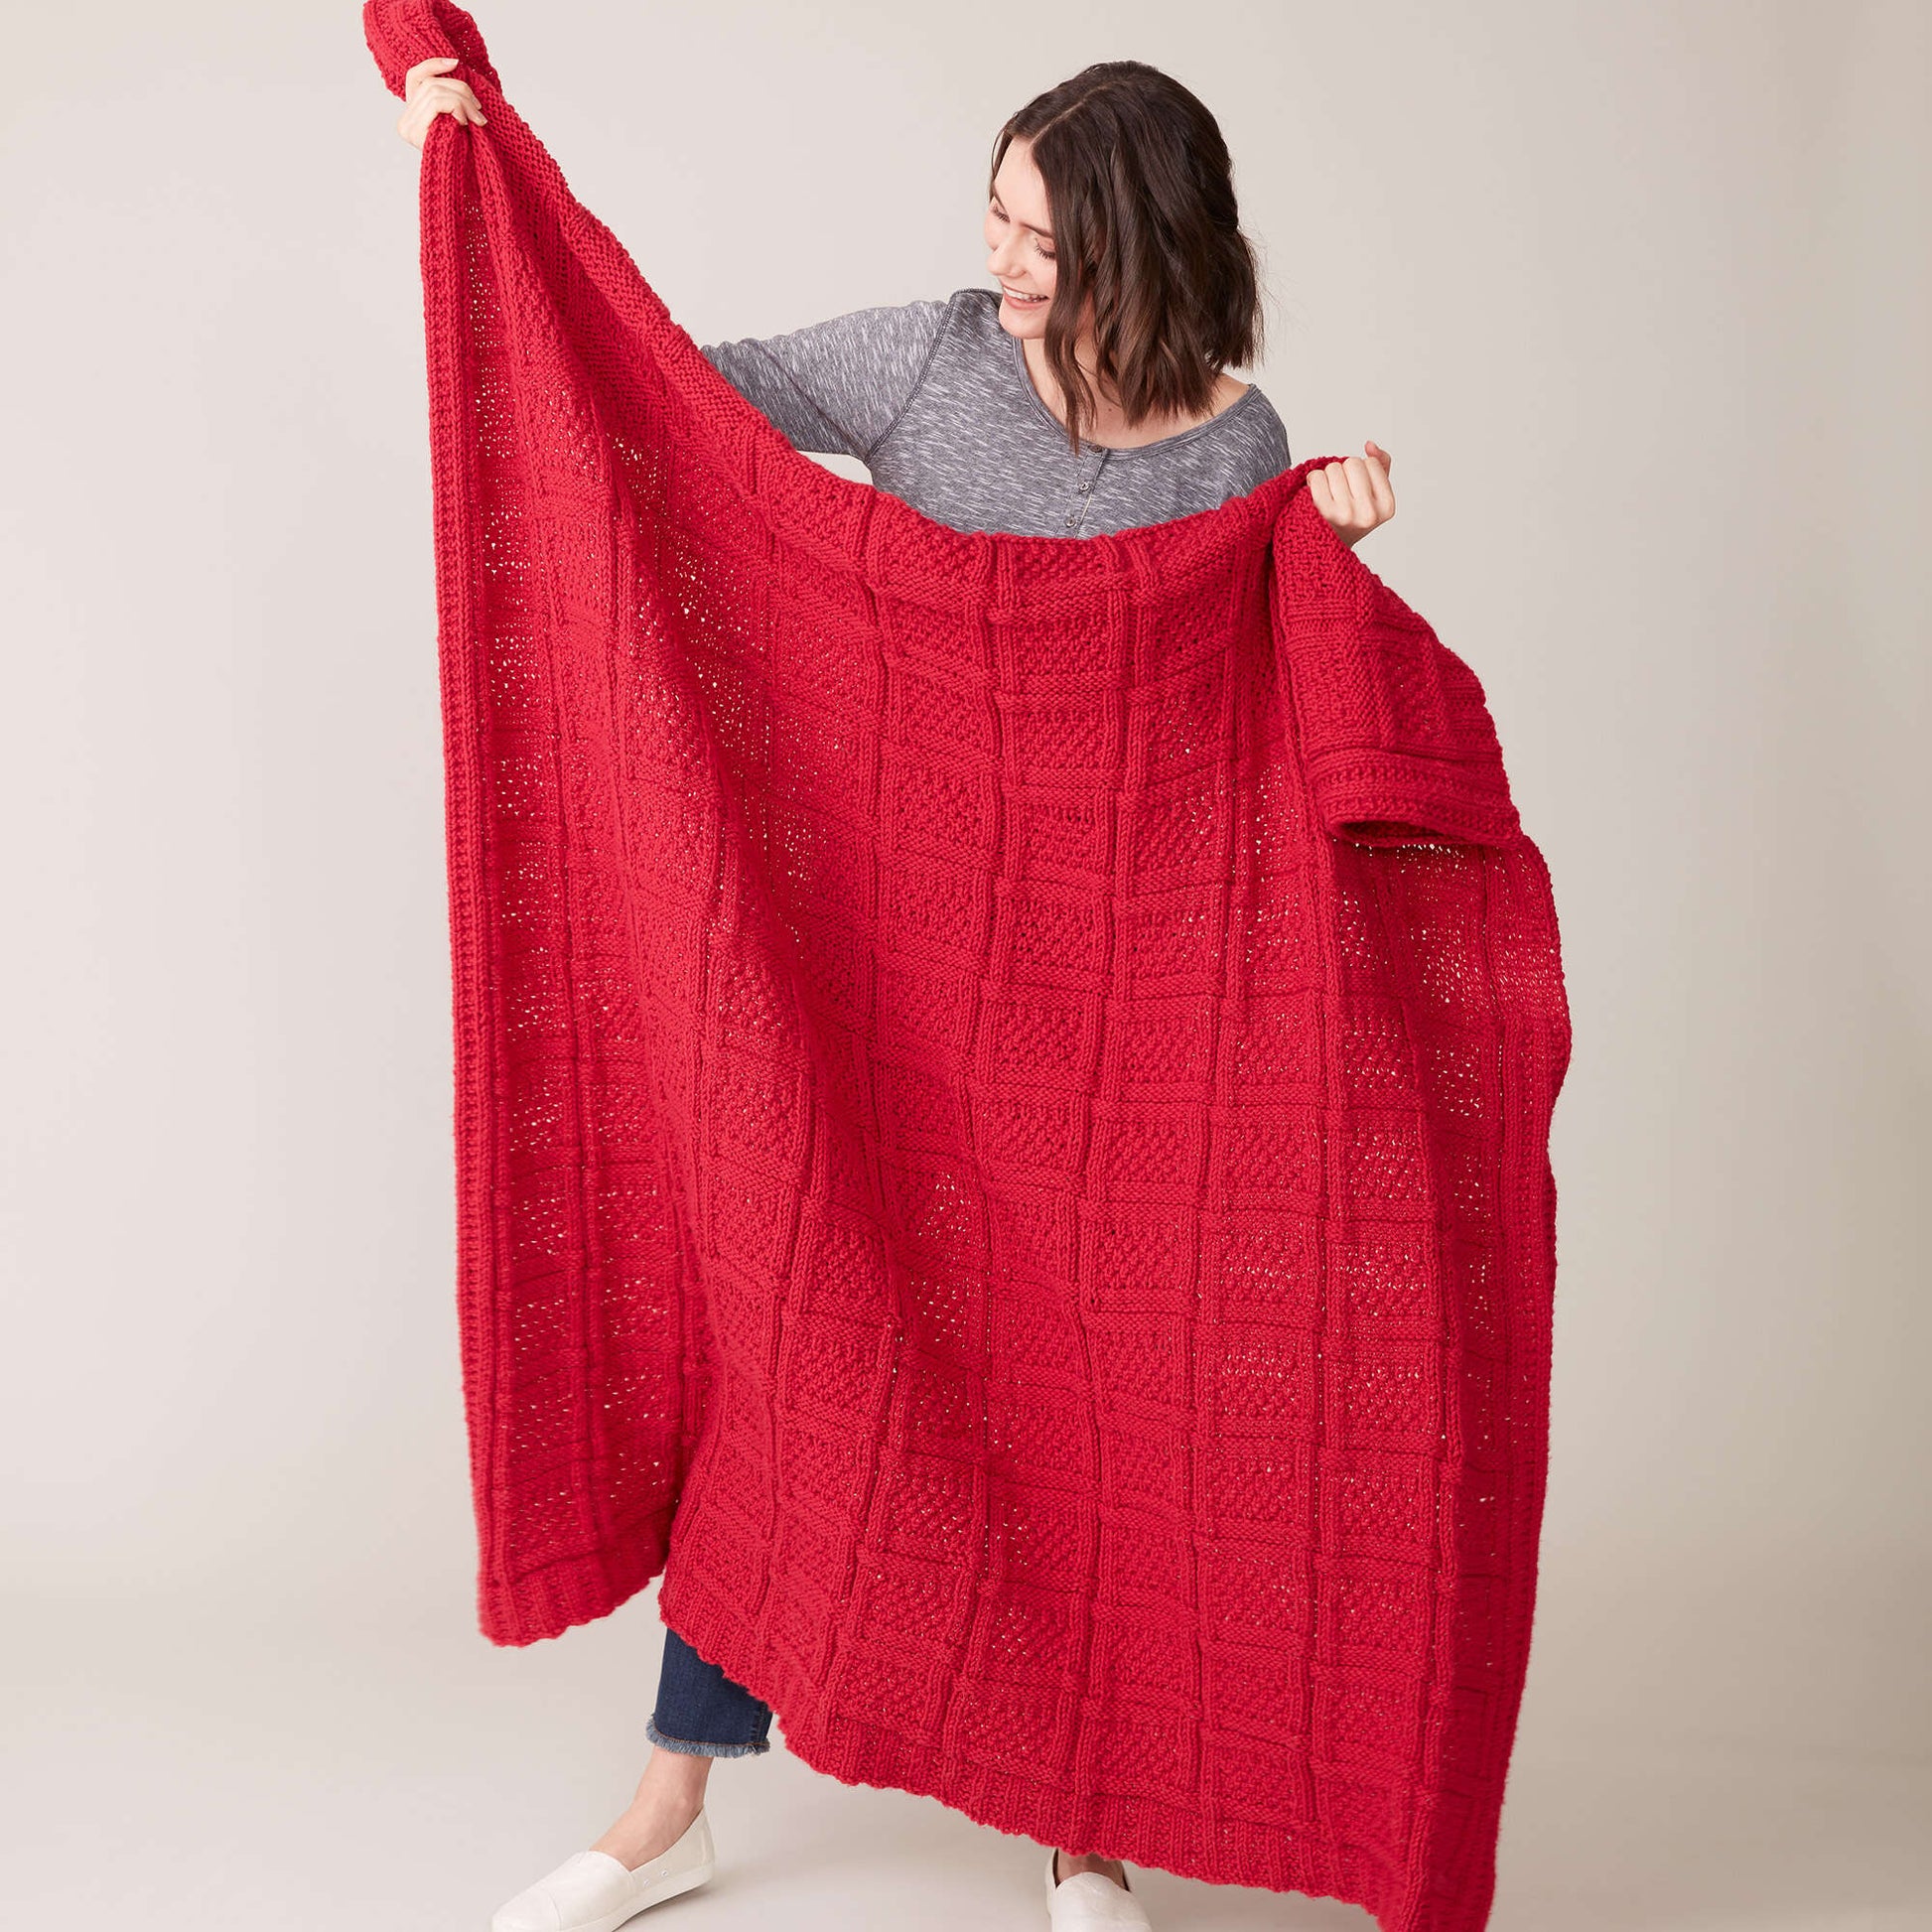 Free Caron Gridlock Knit Blanket Pattern